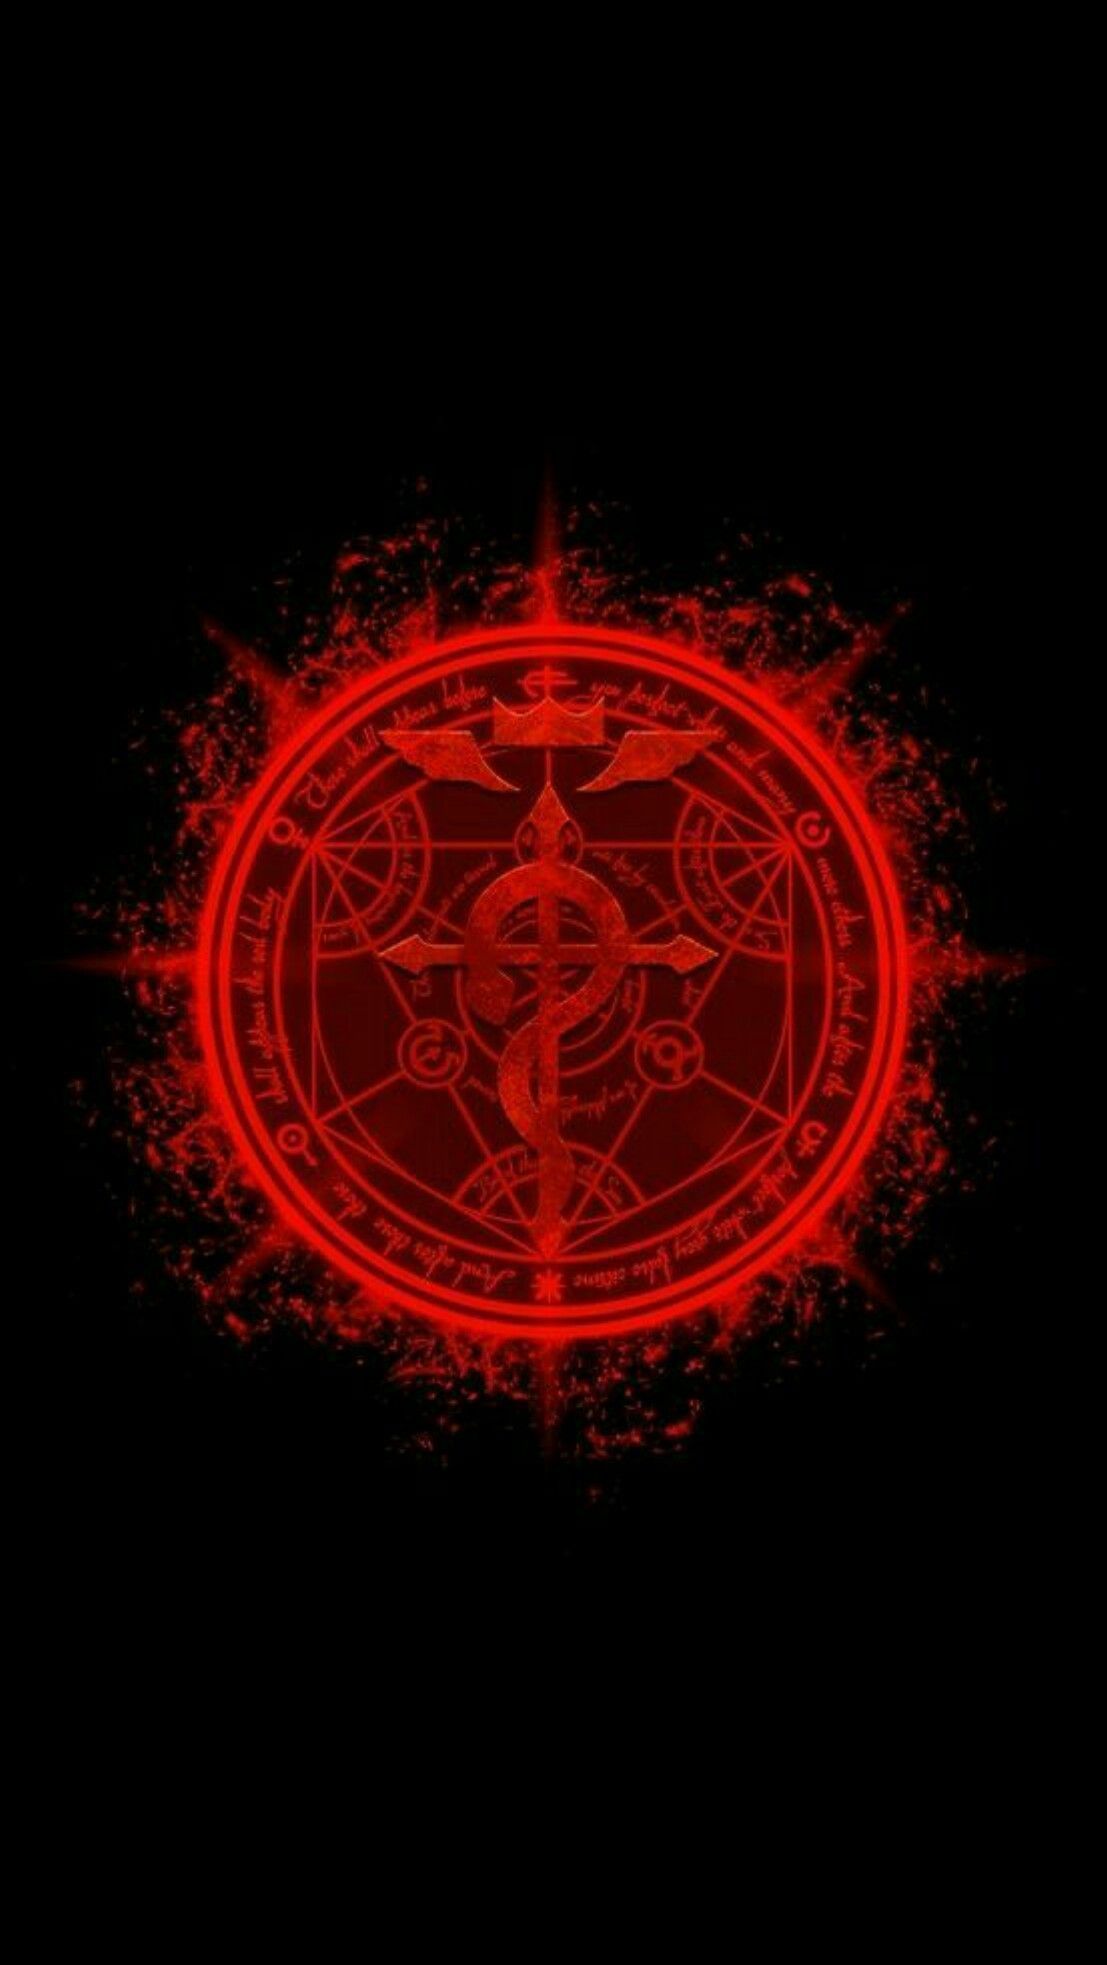 Símbolo de llama - metal completo - fraternidad - fma - mostrado en rojo brillante